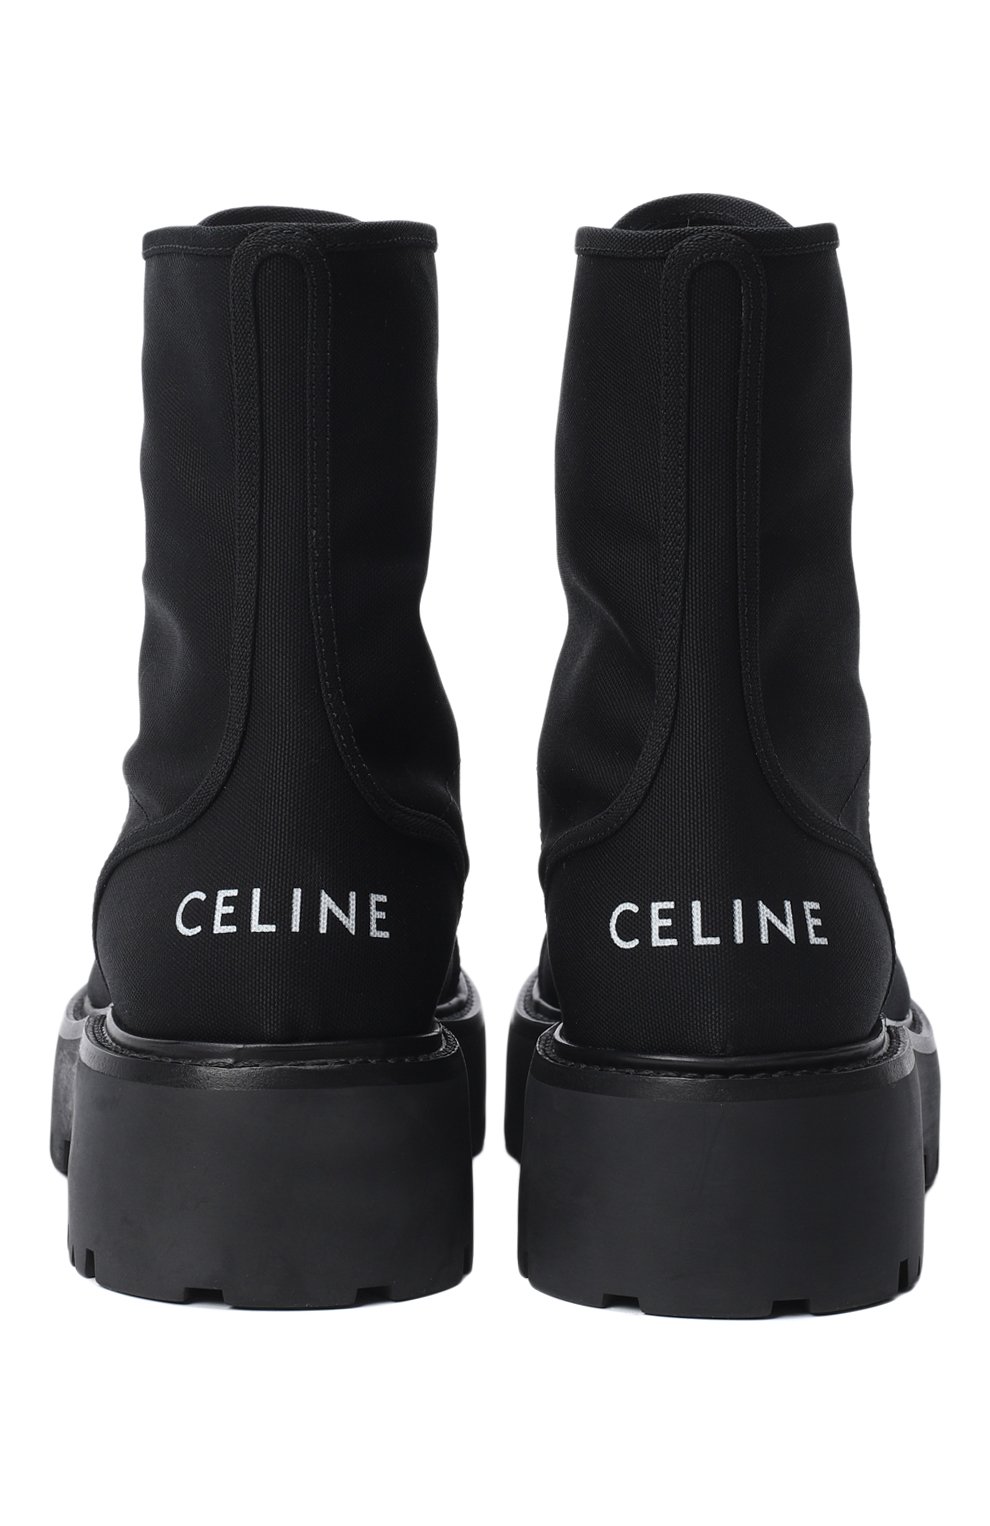 Ботинки Bulky Lace-up | Celine | Чёрный - 3